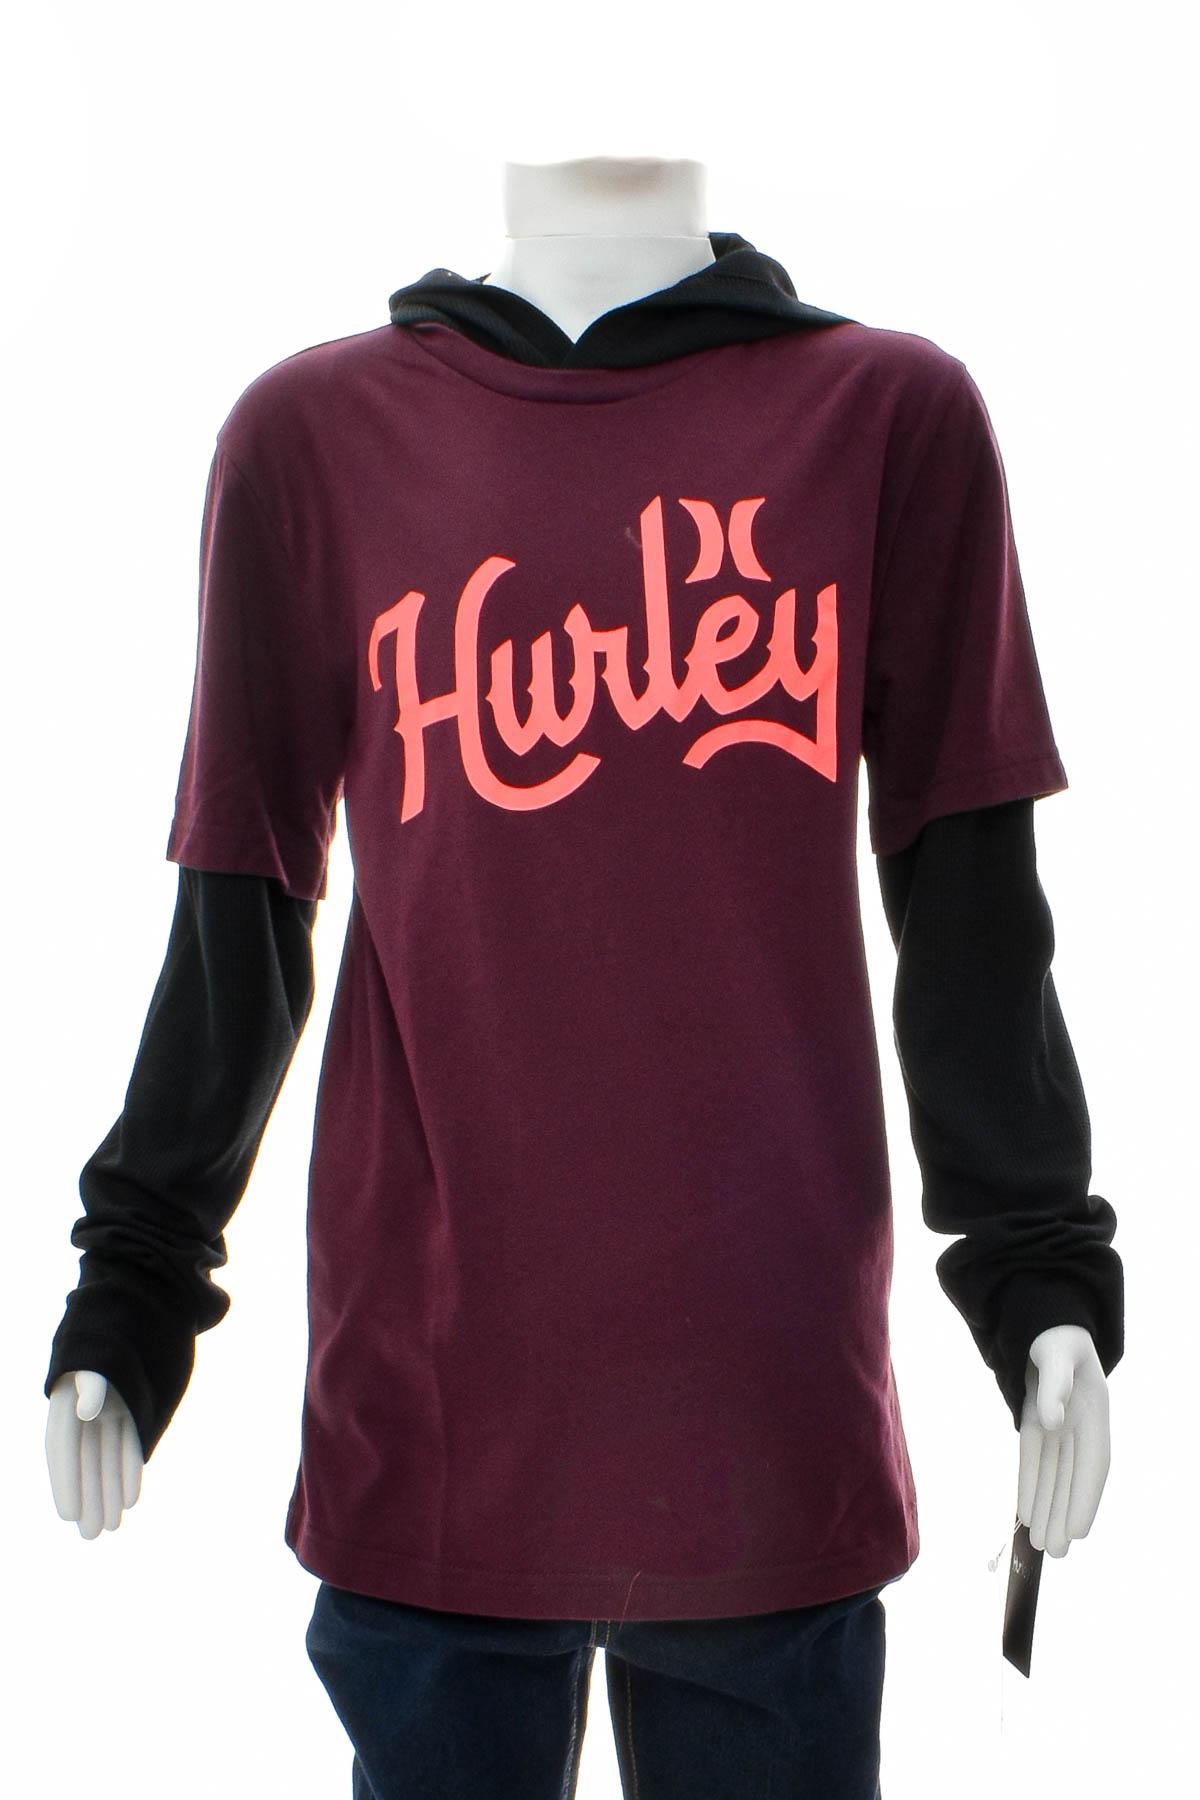 Μπλούζα για αγόρι - Hurley - 0